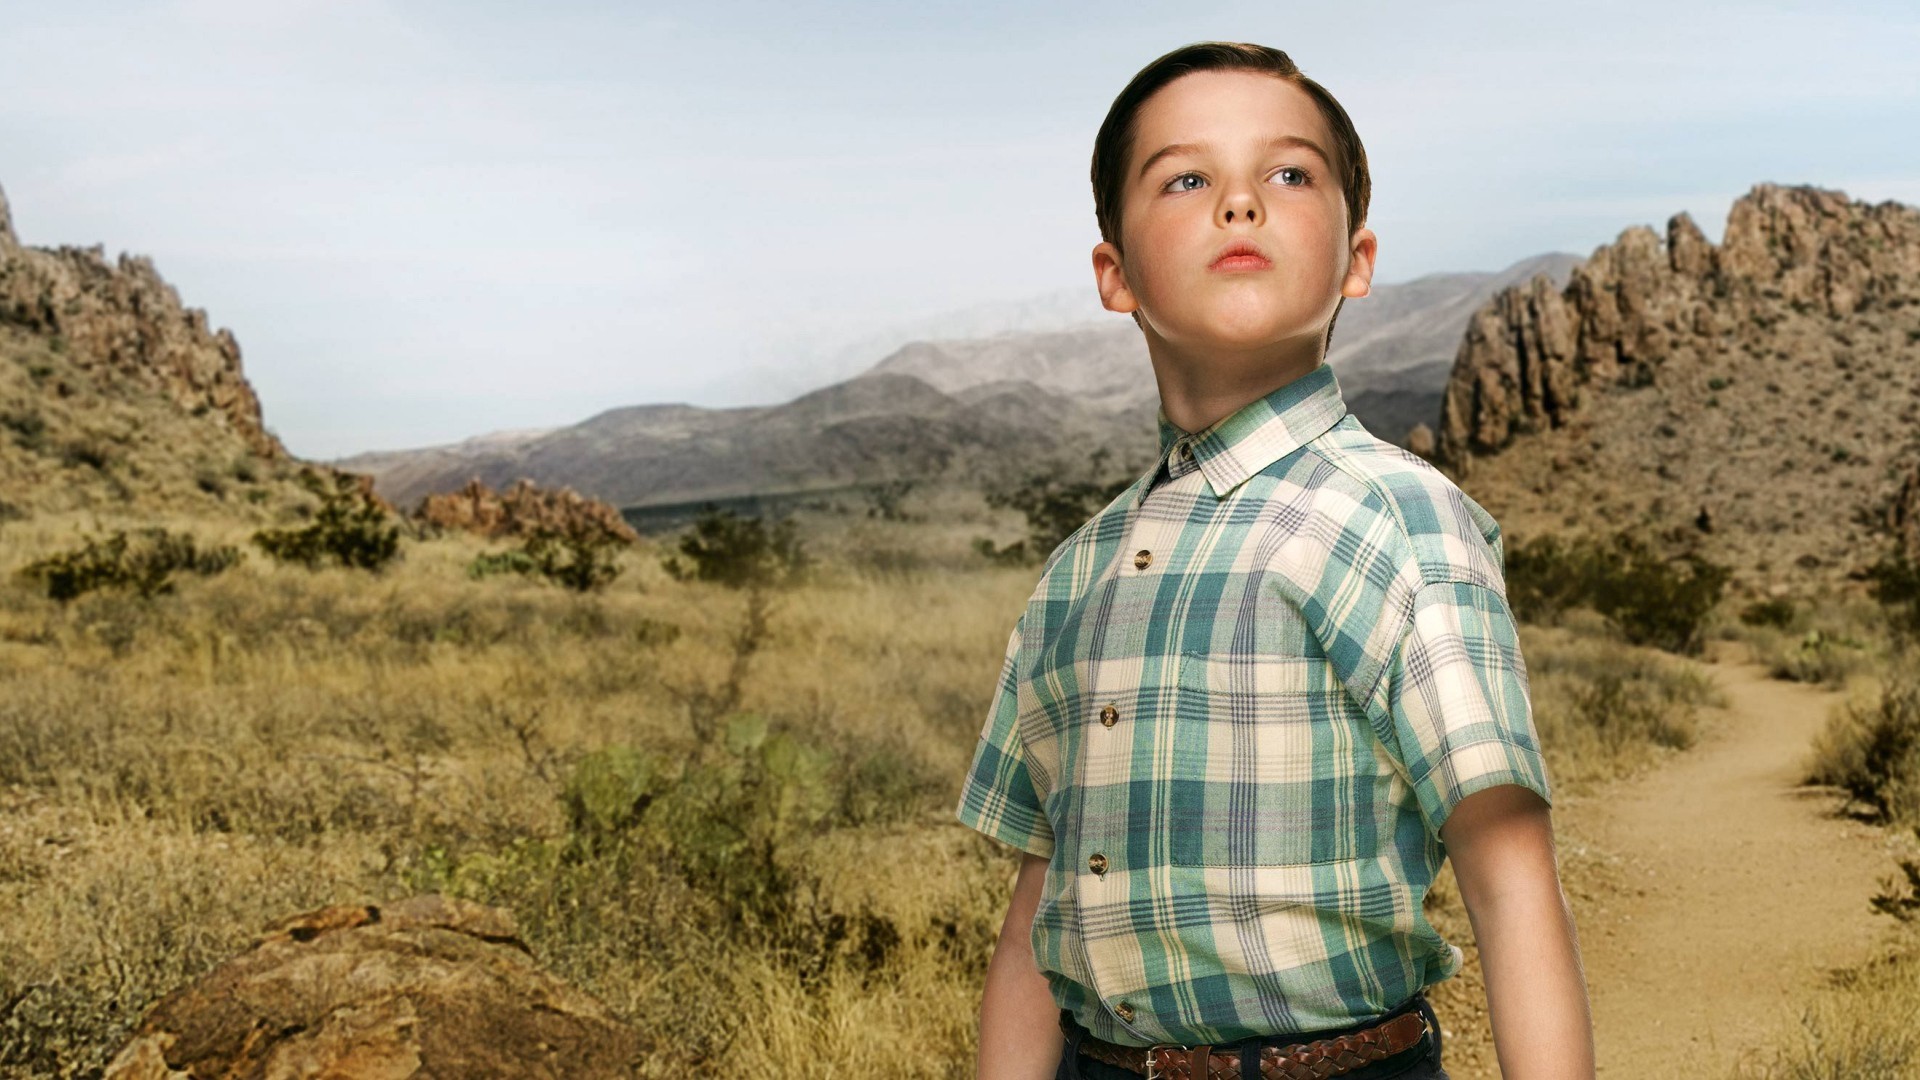 華納宣布《少年謝爾頓》的串流媒體播放權歸給HBO Max！